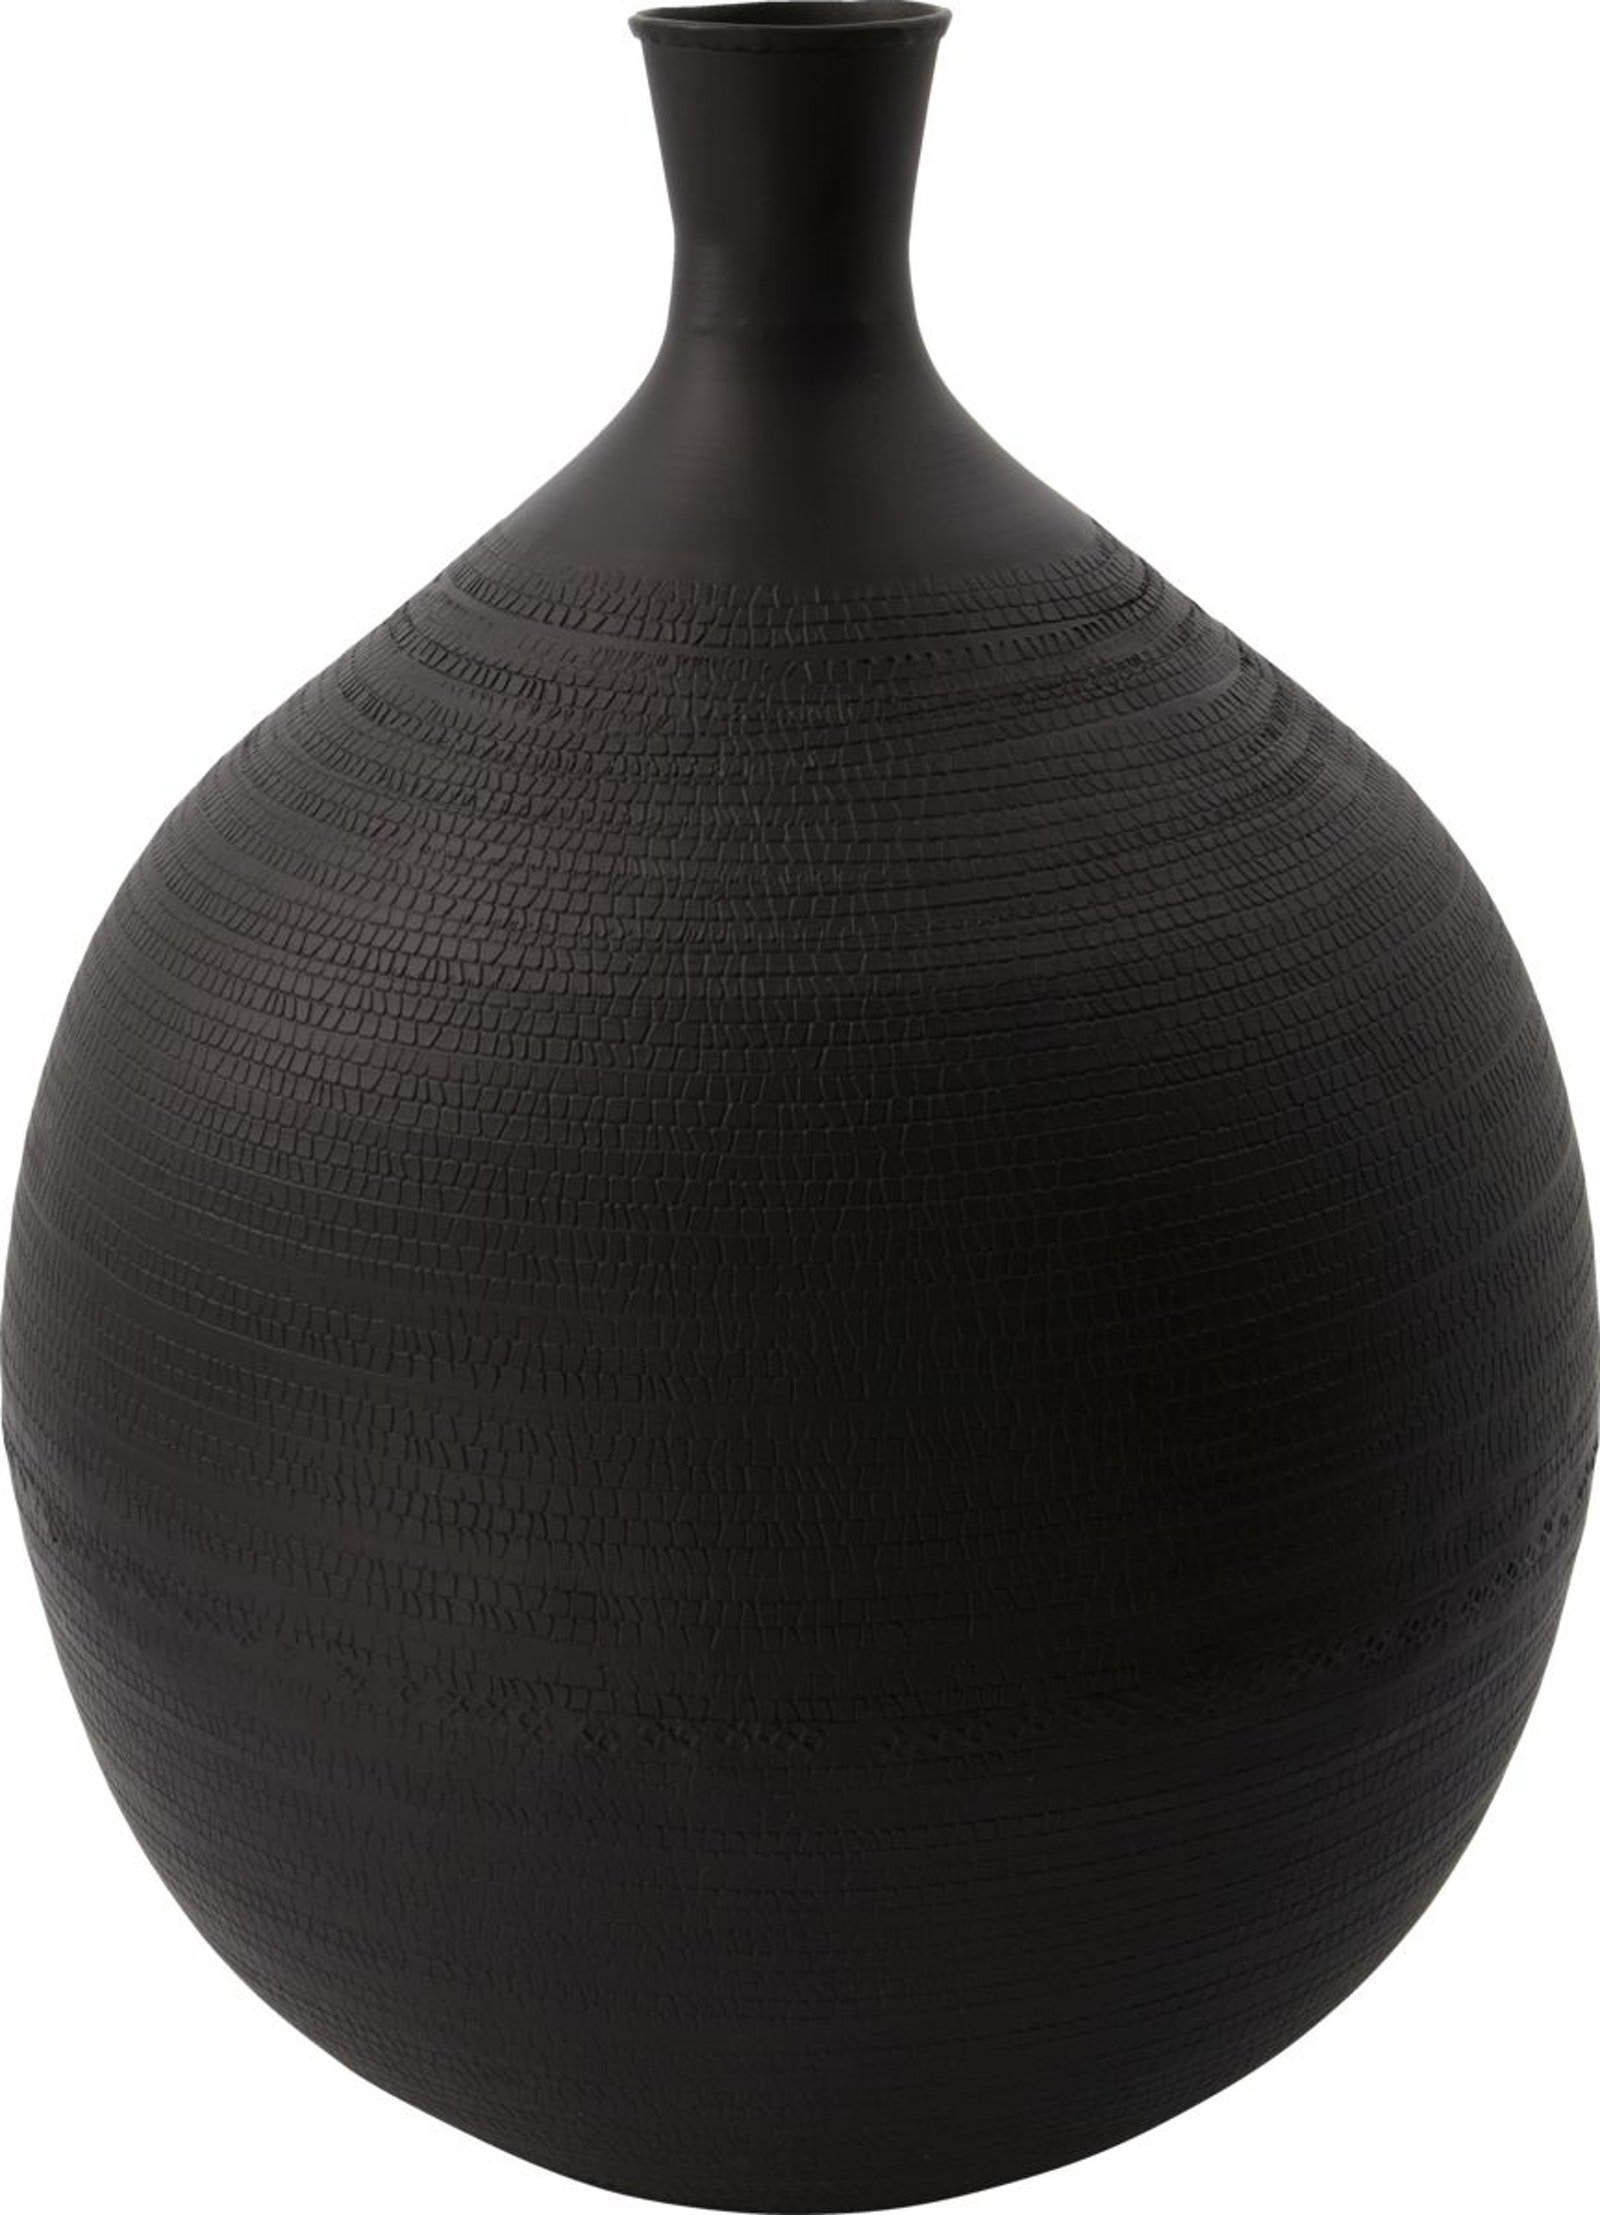 På billedet ser du variationen Reena, Vase fra brandet House Doctor i en størrelse D: 30 cm. x H: 38 cm. i farven Brun